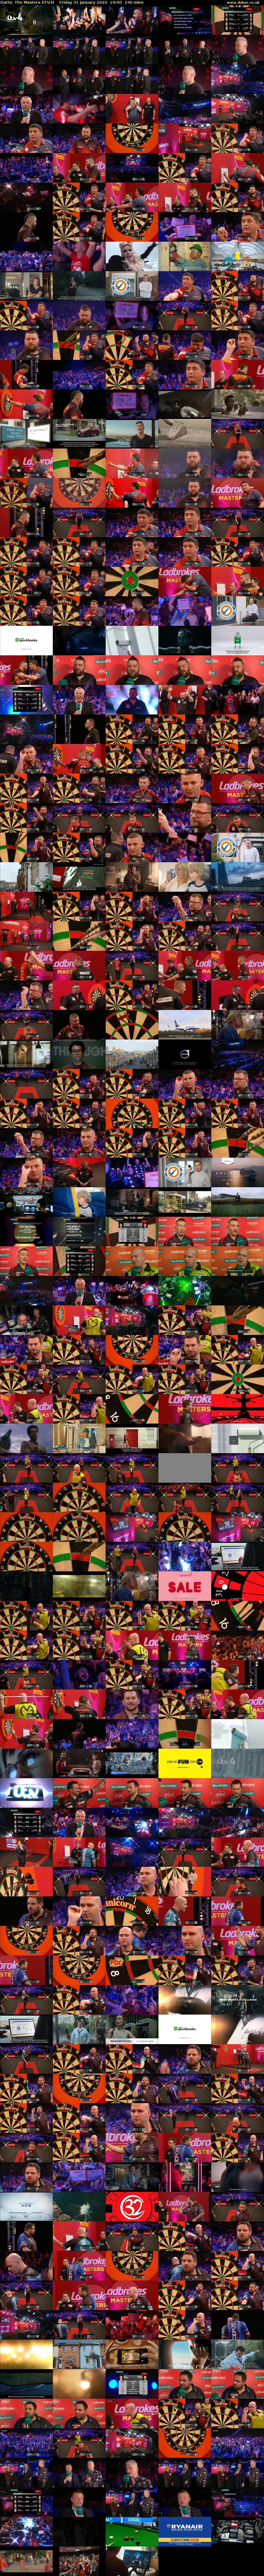 Darts: The Masters (ITV4) Friday 31 January 2020 19:00 - 23:00